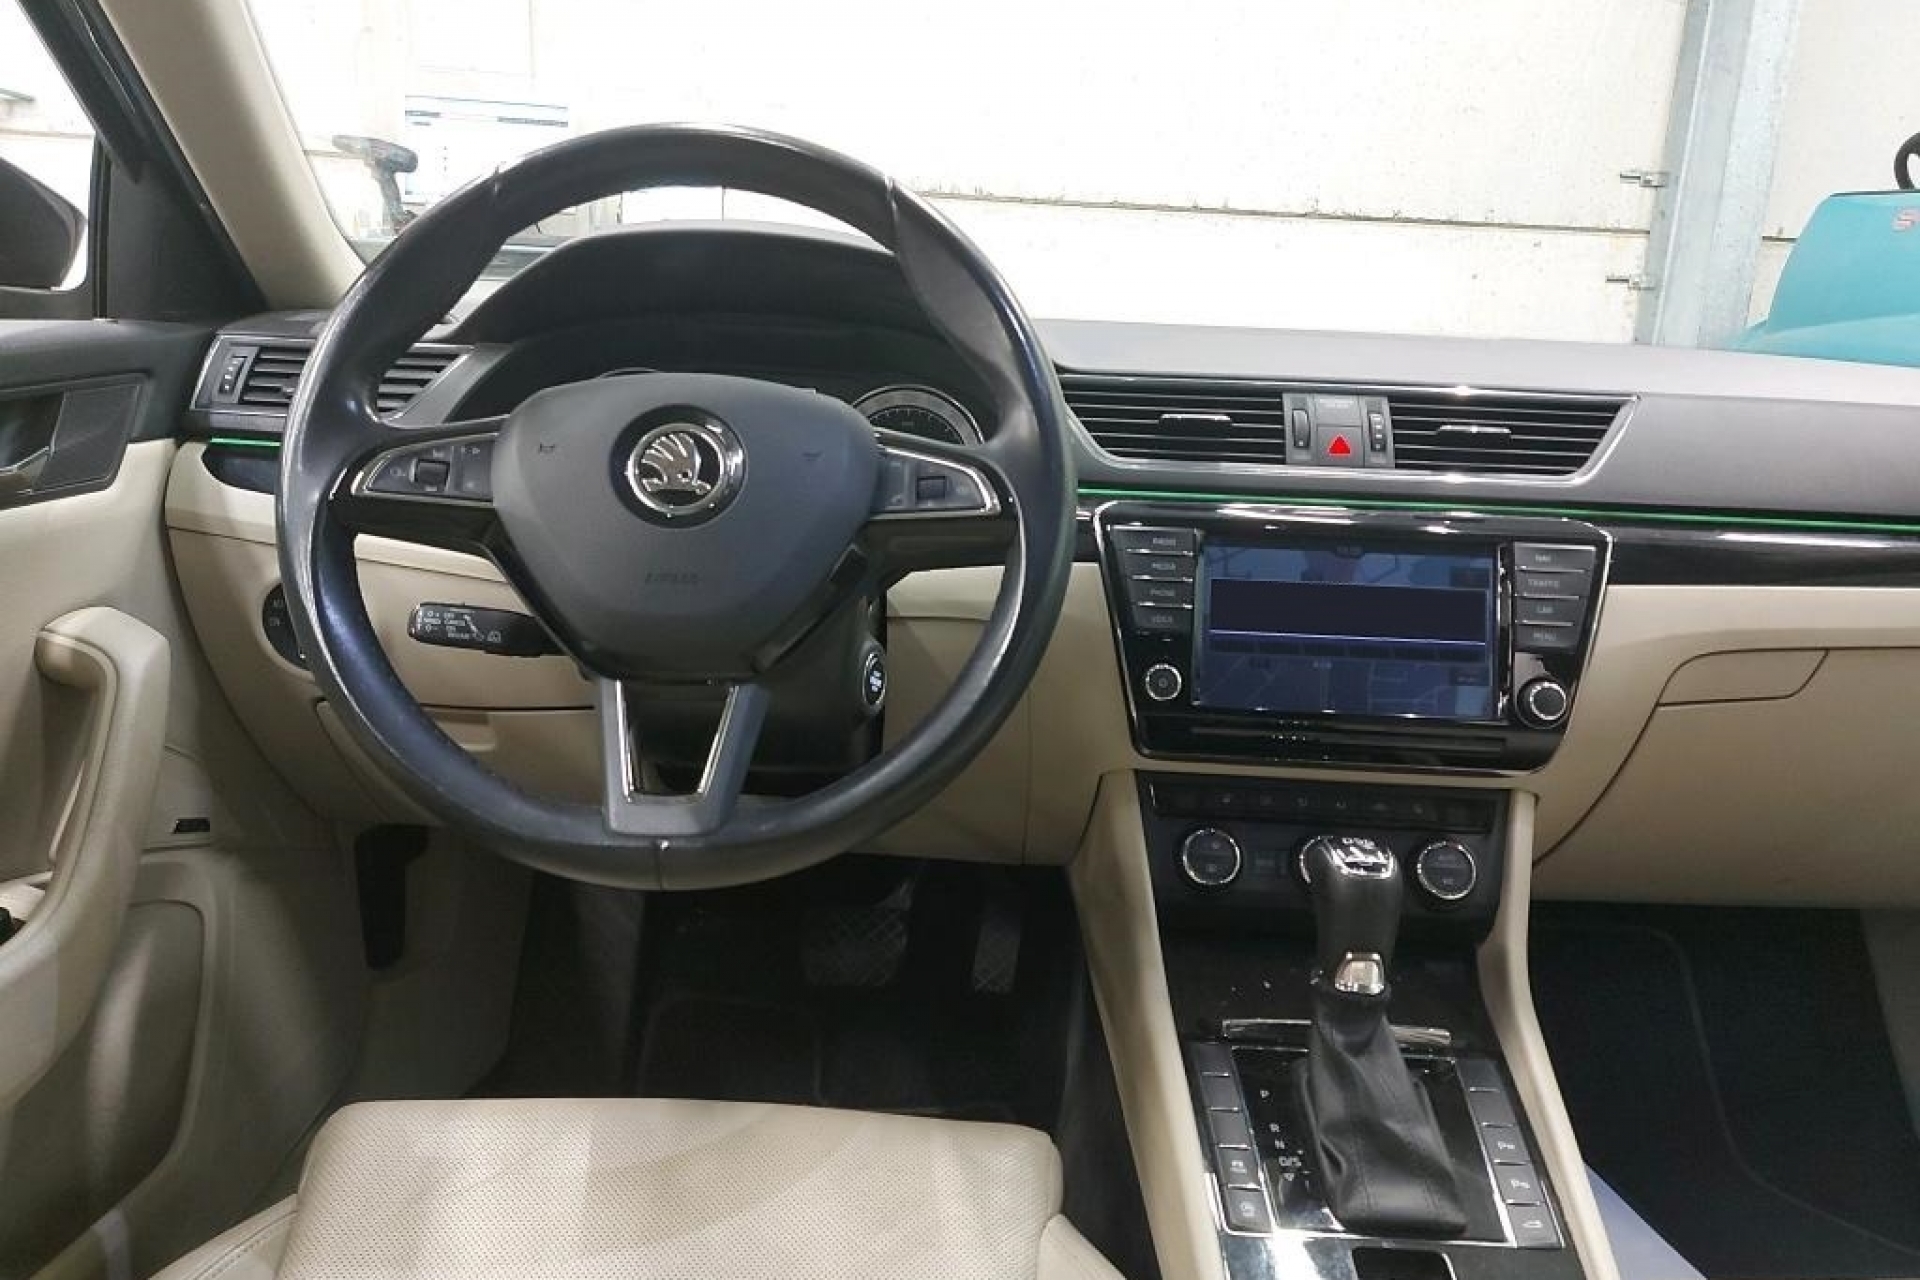 Škoda Superb 2.0 TDI 150 KS DSG-Tiptronik Laurin&Klement Bi-Xenon+LED Navigacija Kamera ParkAssist ACC-System Max-Voll New Modell 2018